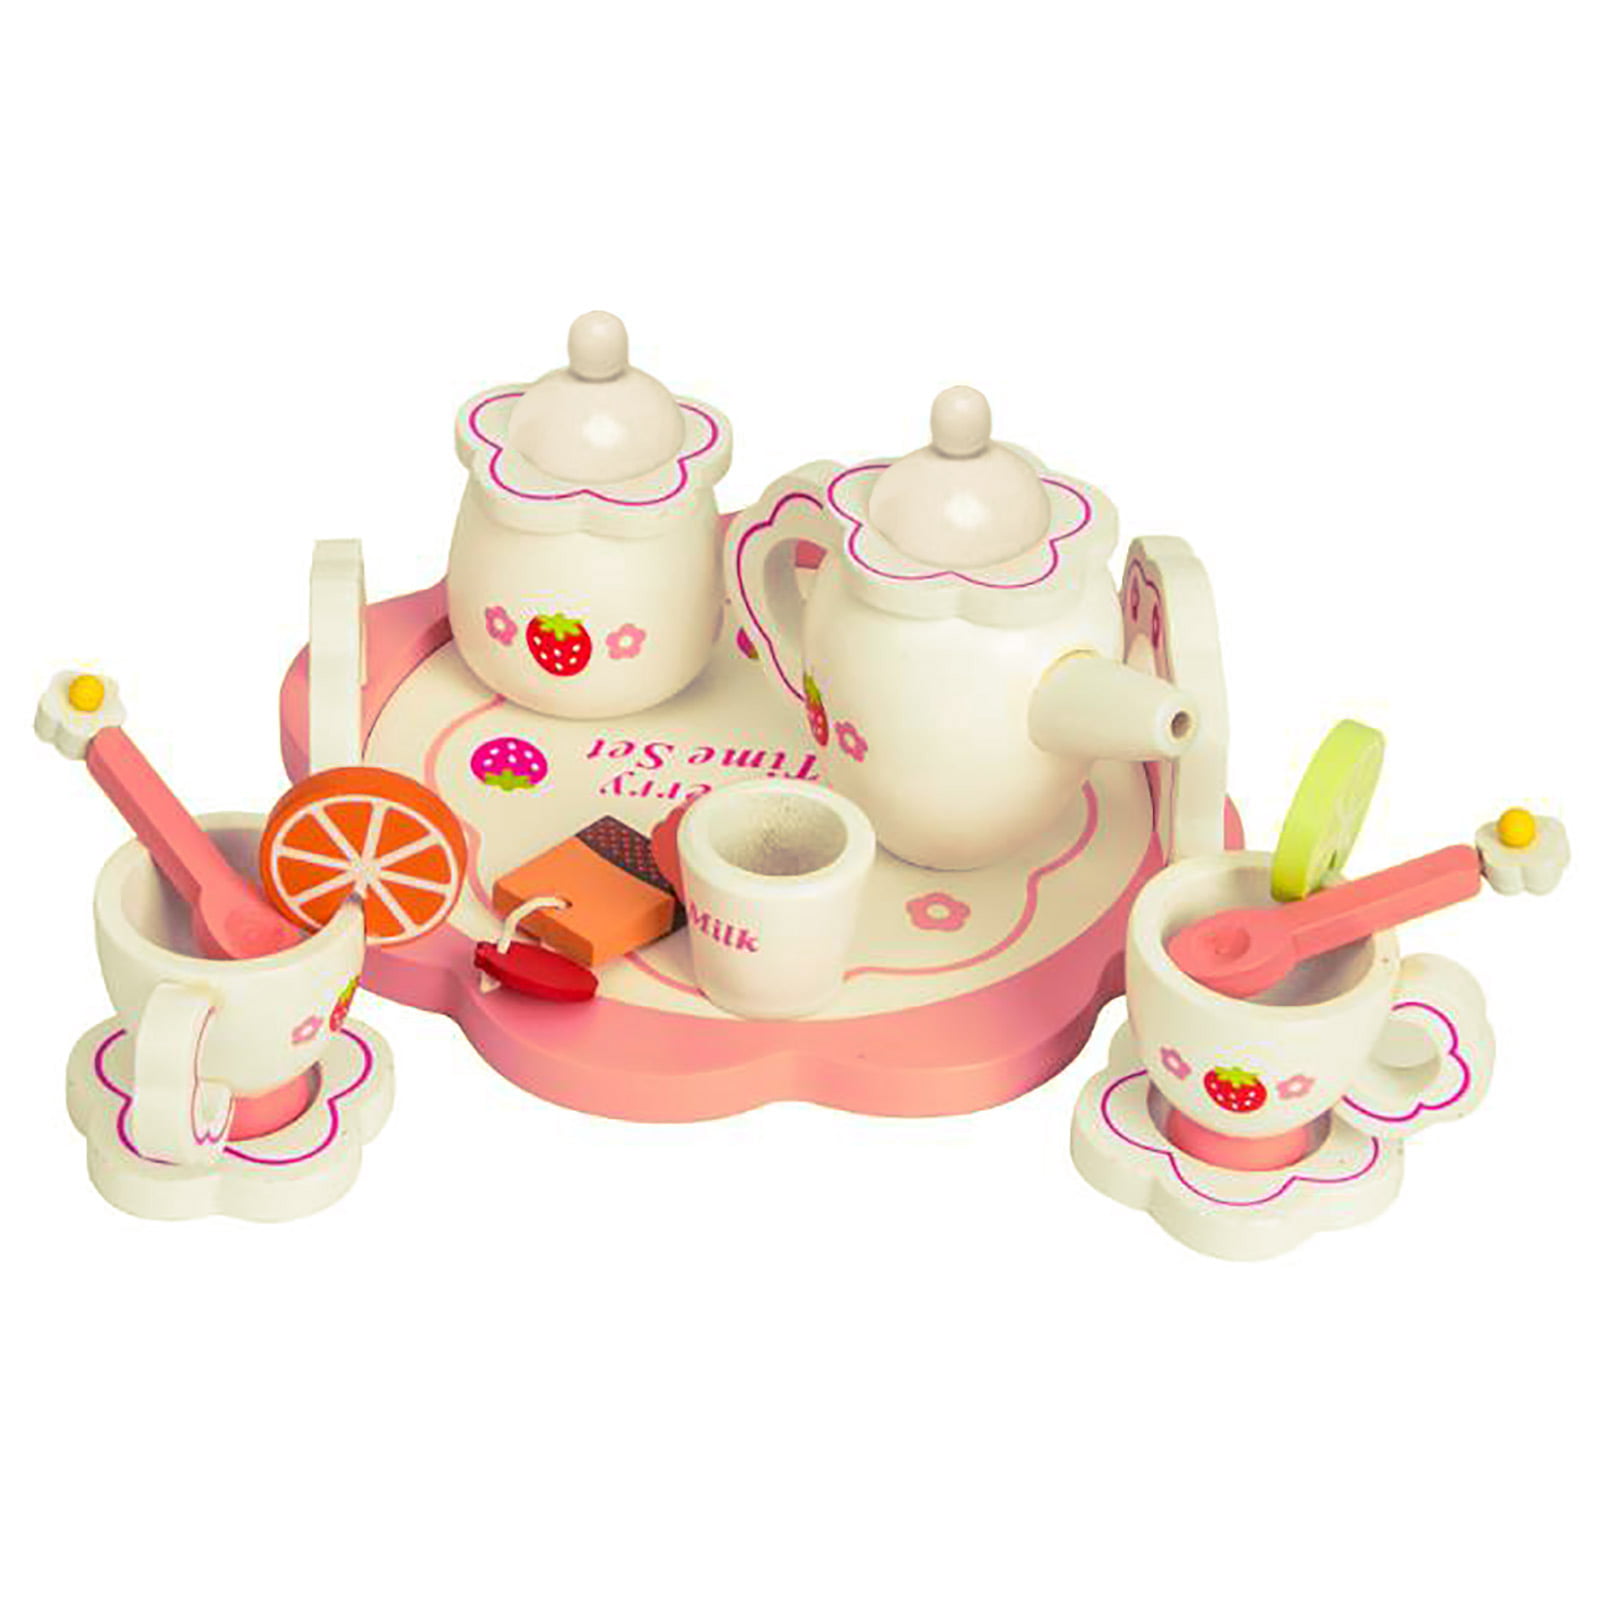 Details about   Dishes set Wooden Tea Set toy Pretend tea party Tea Set kids Wooden toys 